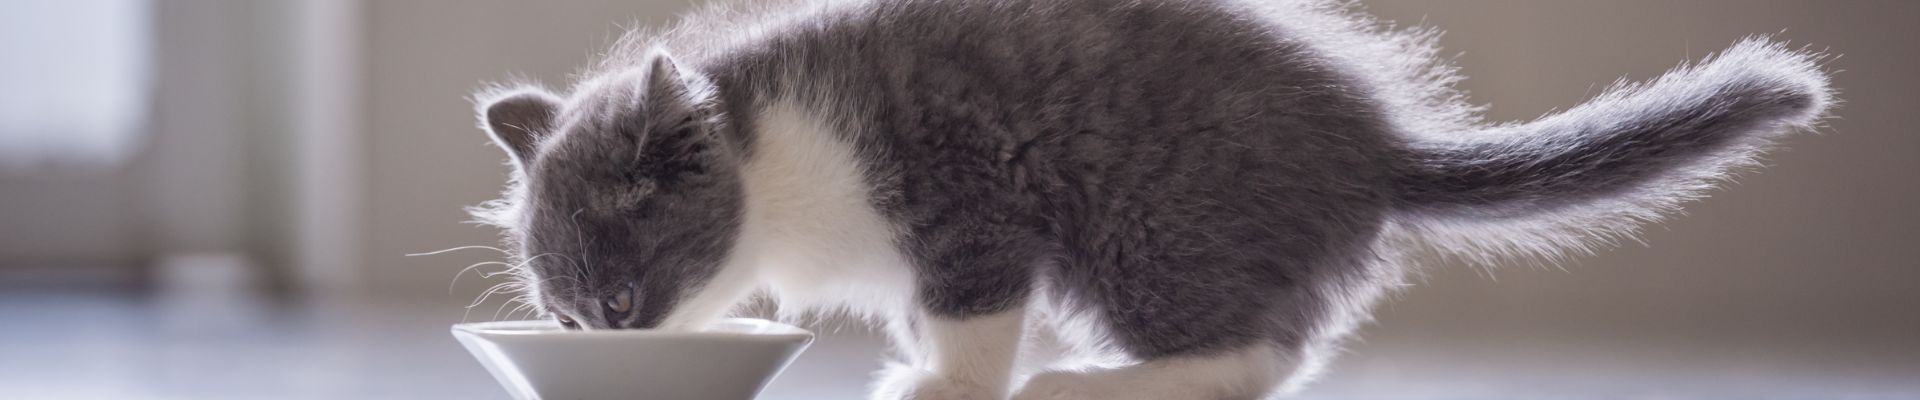 pancarta de un gatito gris comiendo de un plato blanco